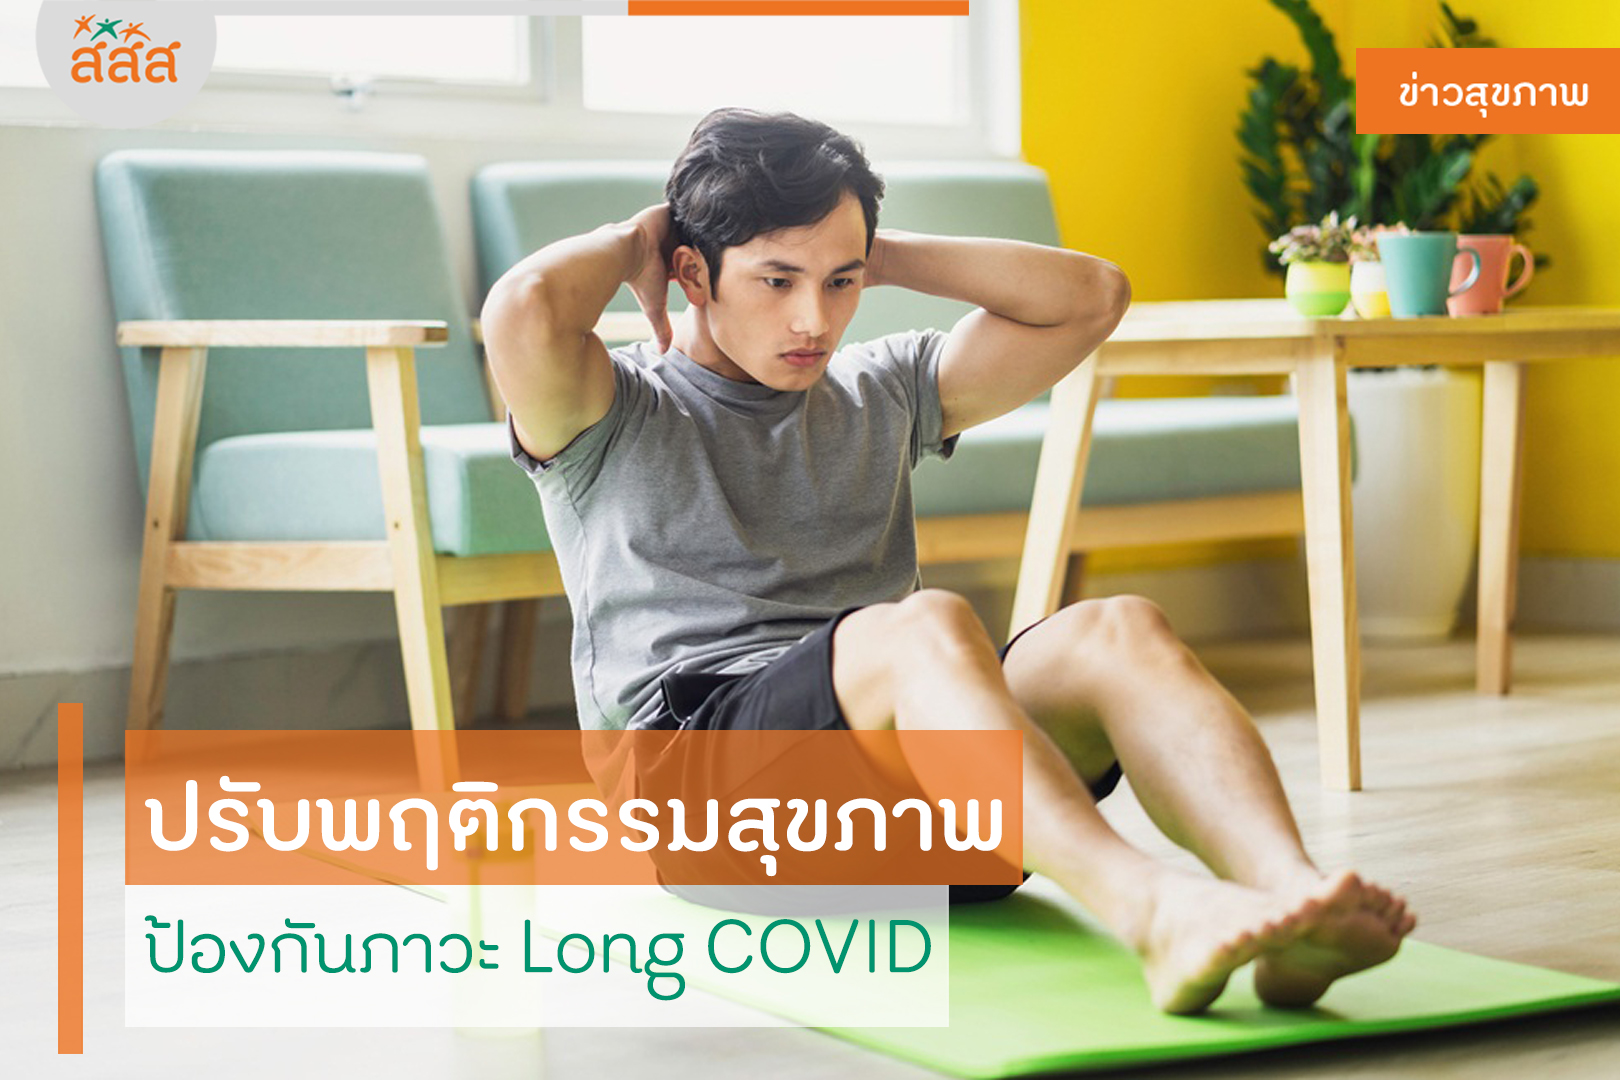 ปรับพฤติกรรมสุขภาพ ป้องกันภาวะ Long COVID thaihealth